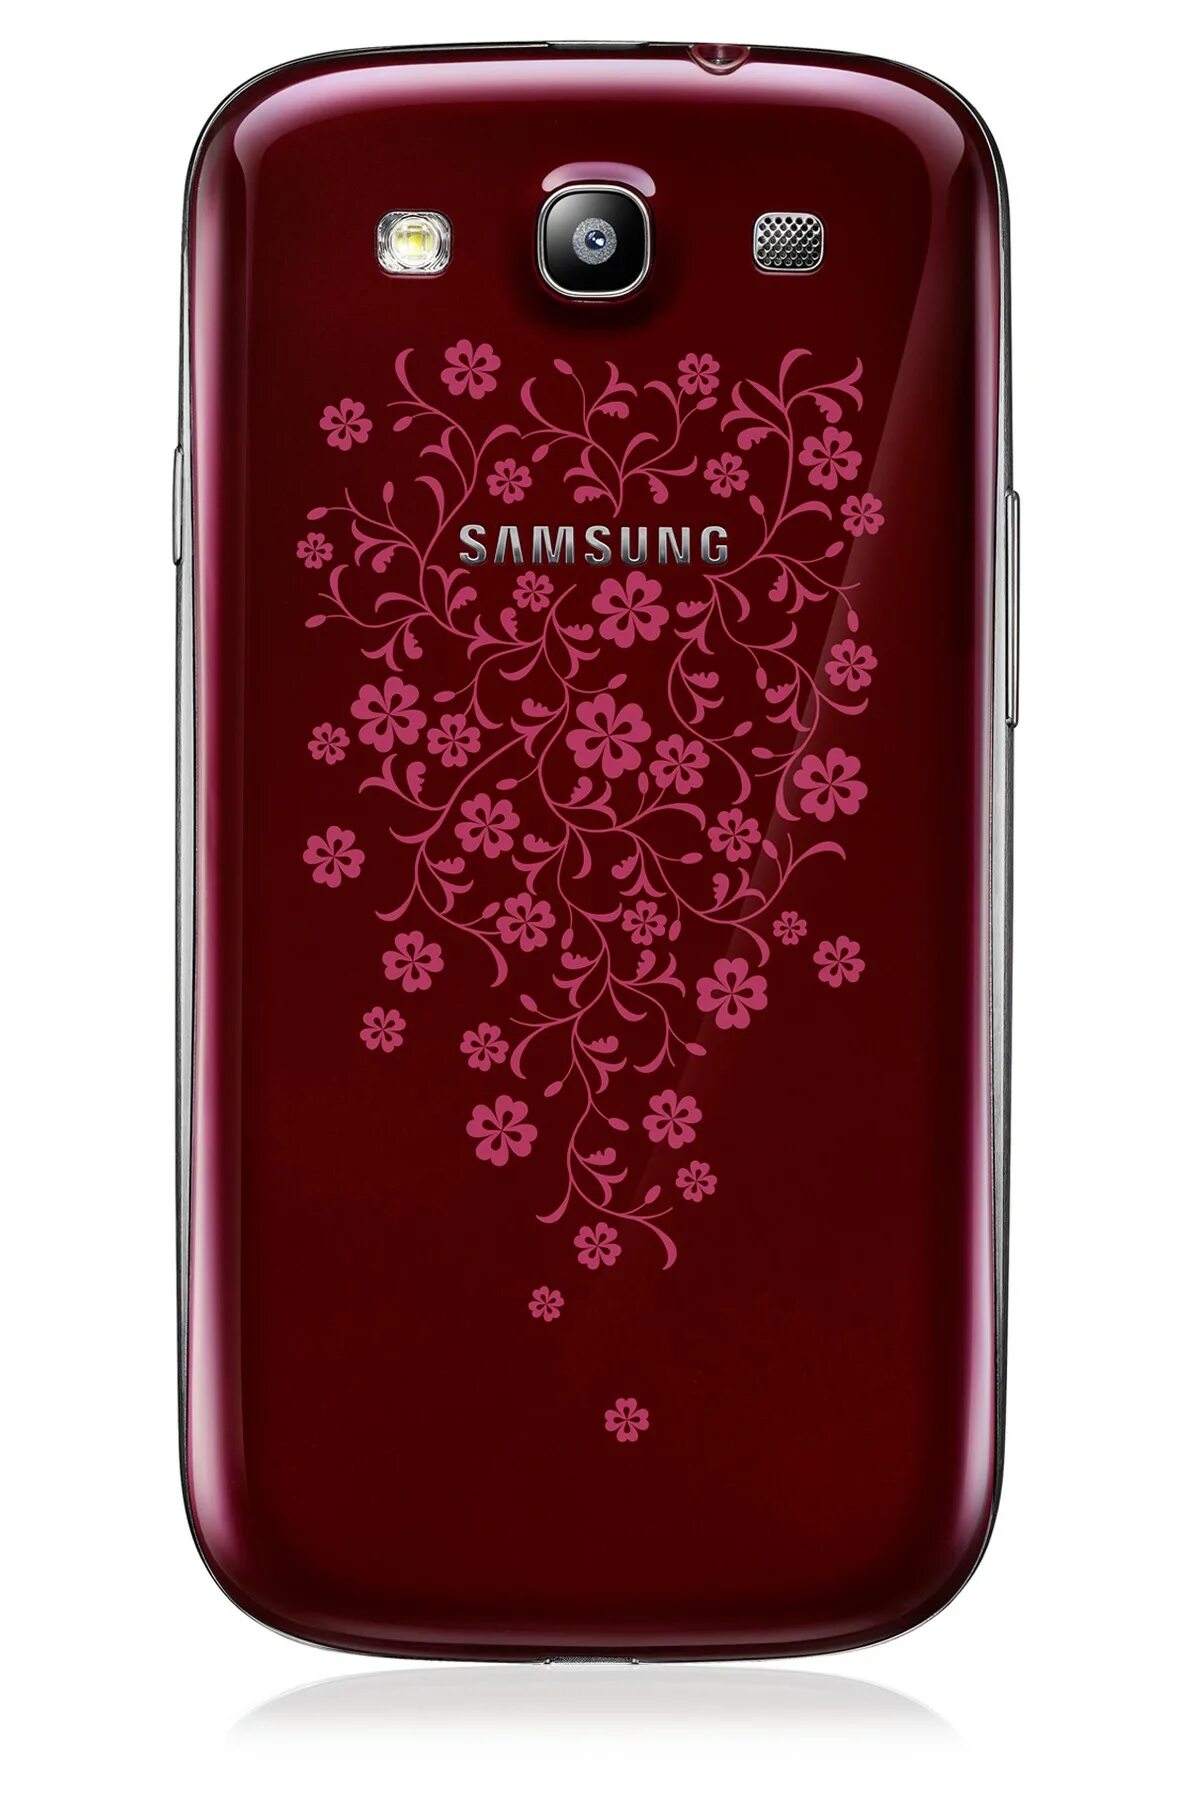 Самсунг la fleur. Samsung Galaxy s3 la fleur. Samsung Galaxy s3 la fleur Red. Samsung Galaxy s3 Neo la fleur. Samsung i9300 la fleur.